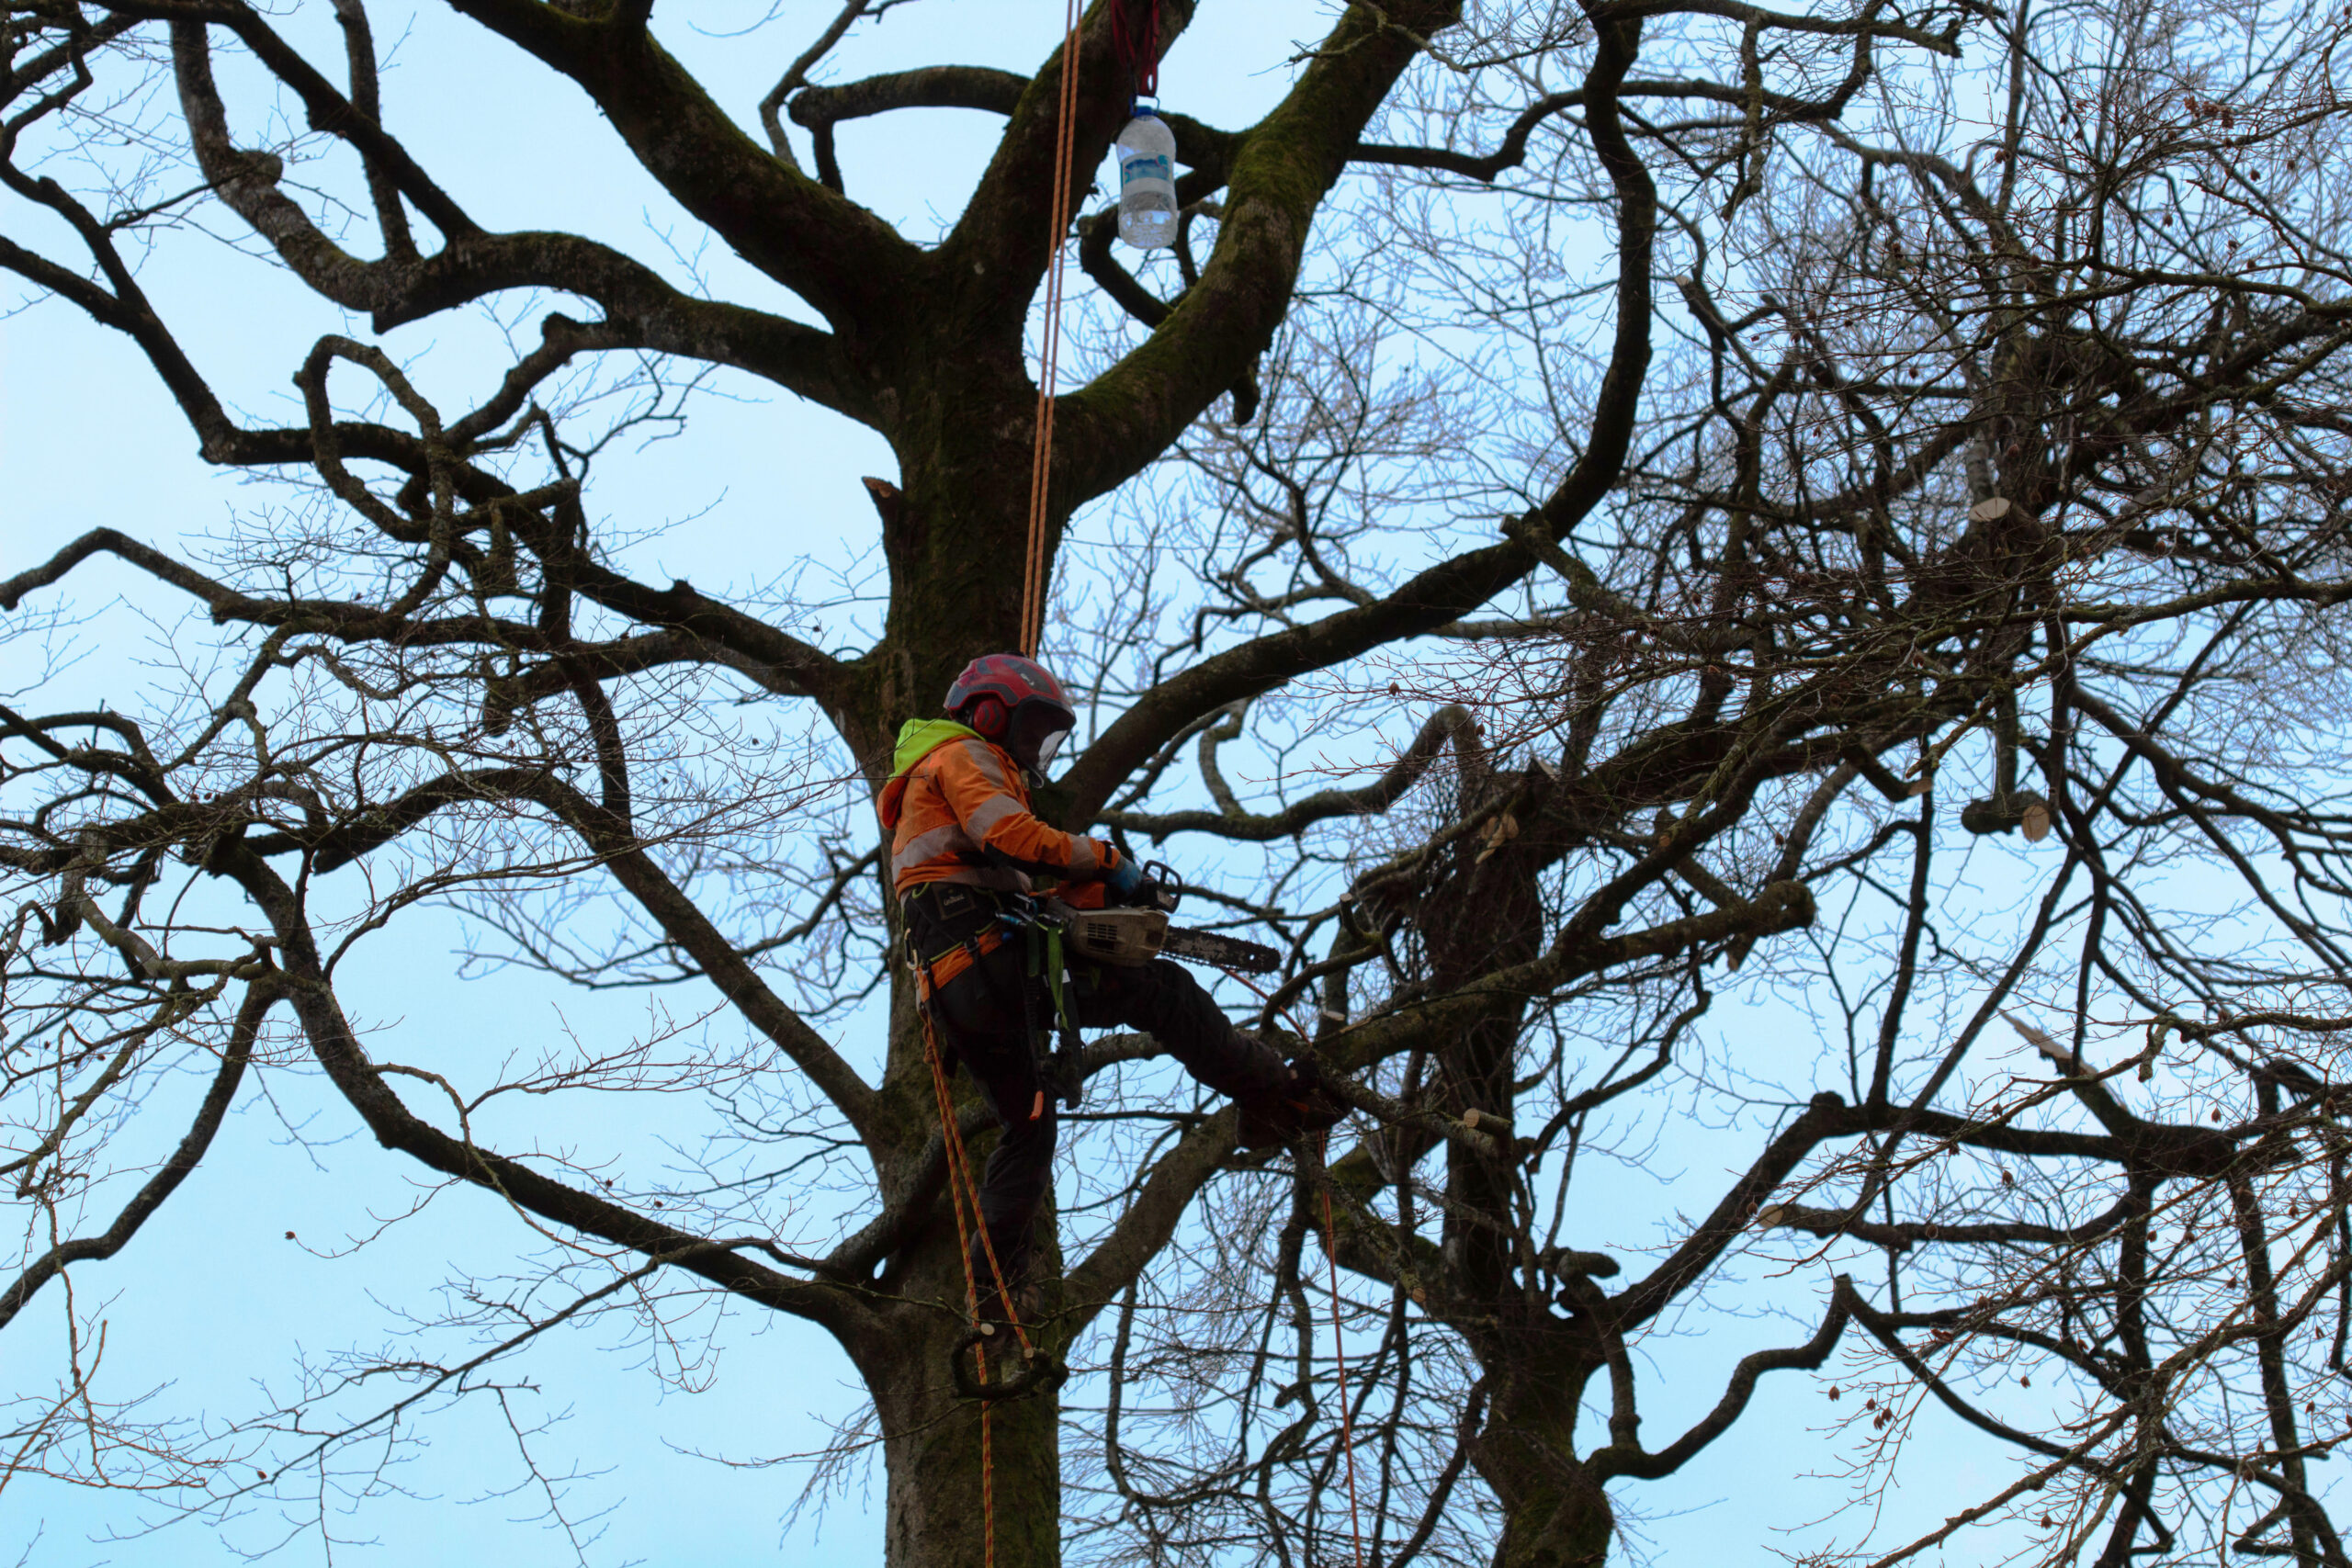 A tree surgeon climbing a tree.